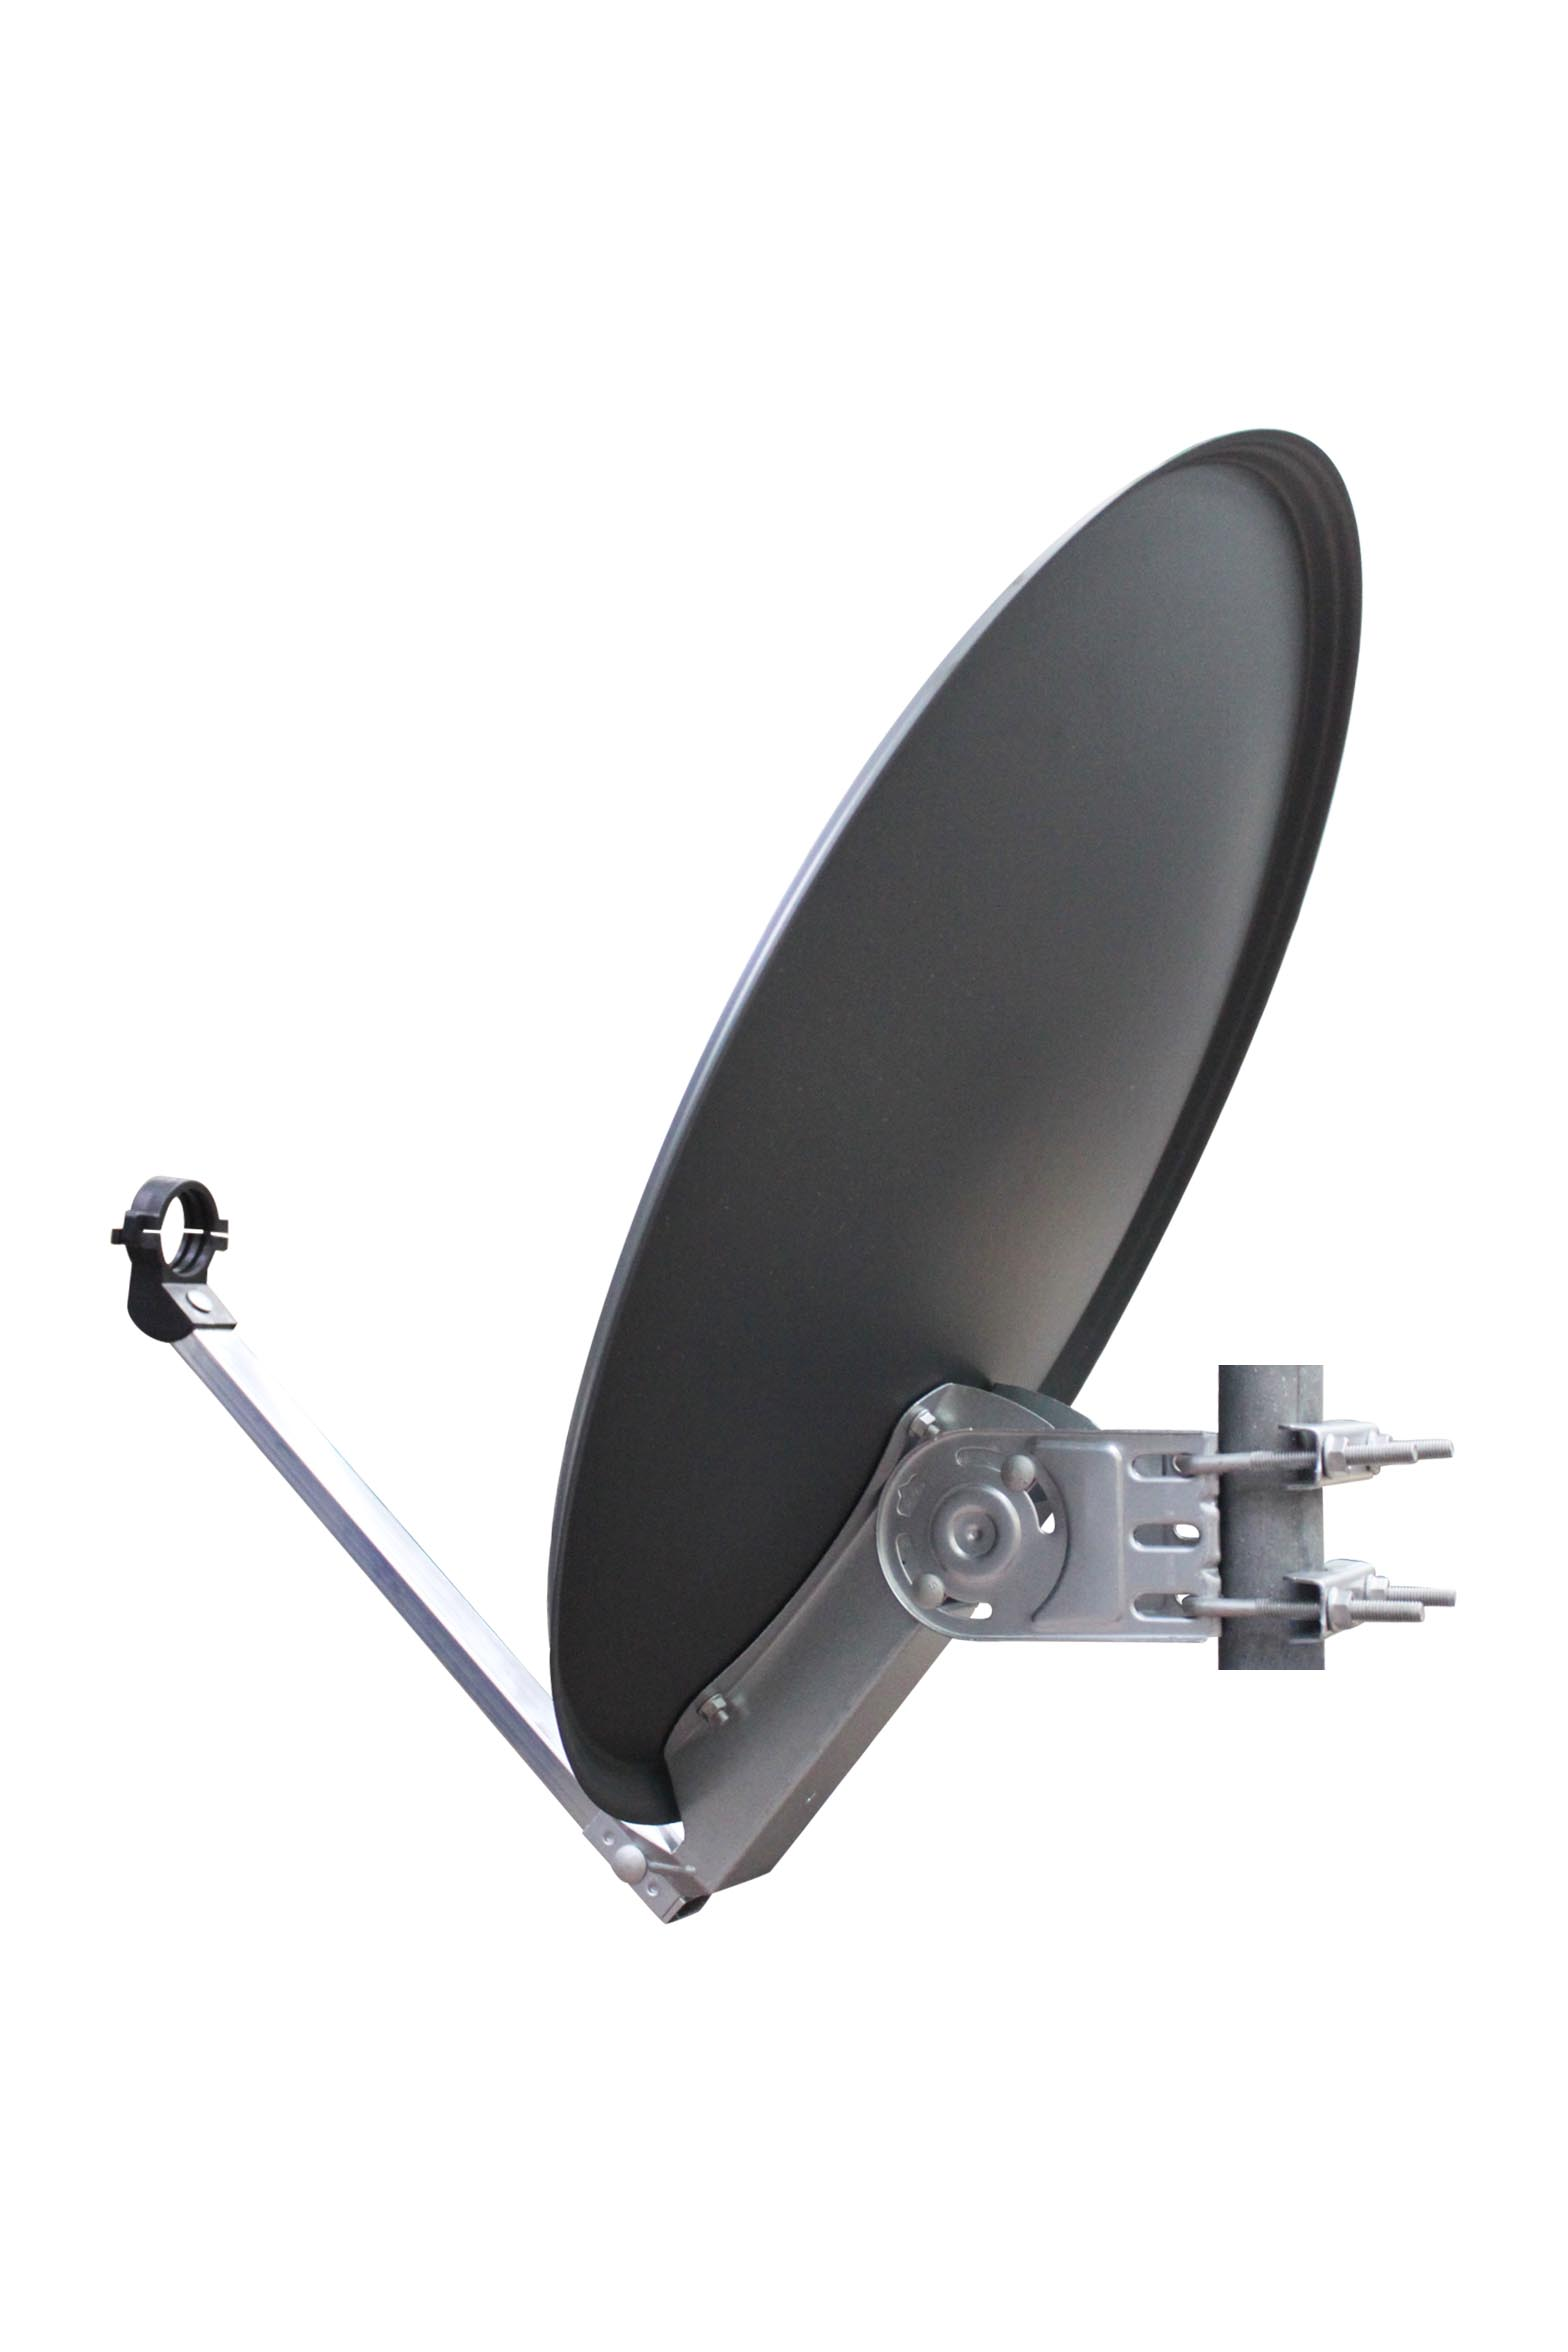 60cm anthrazit - OPTICUM Satellitenantenne Alu Satellitenschüssel -Witterungsbeständige QA60 Sat-Antenne cm aus Sat-Spiegel 60 RED